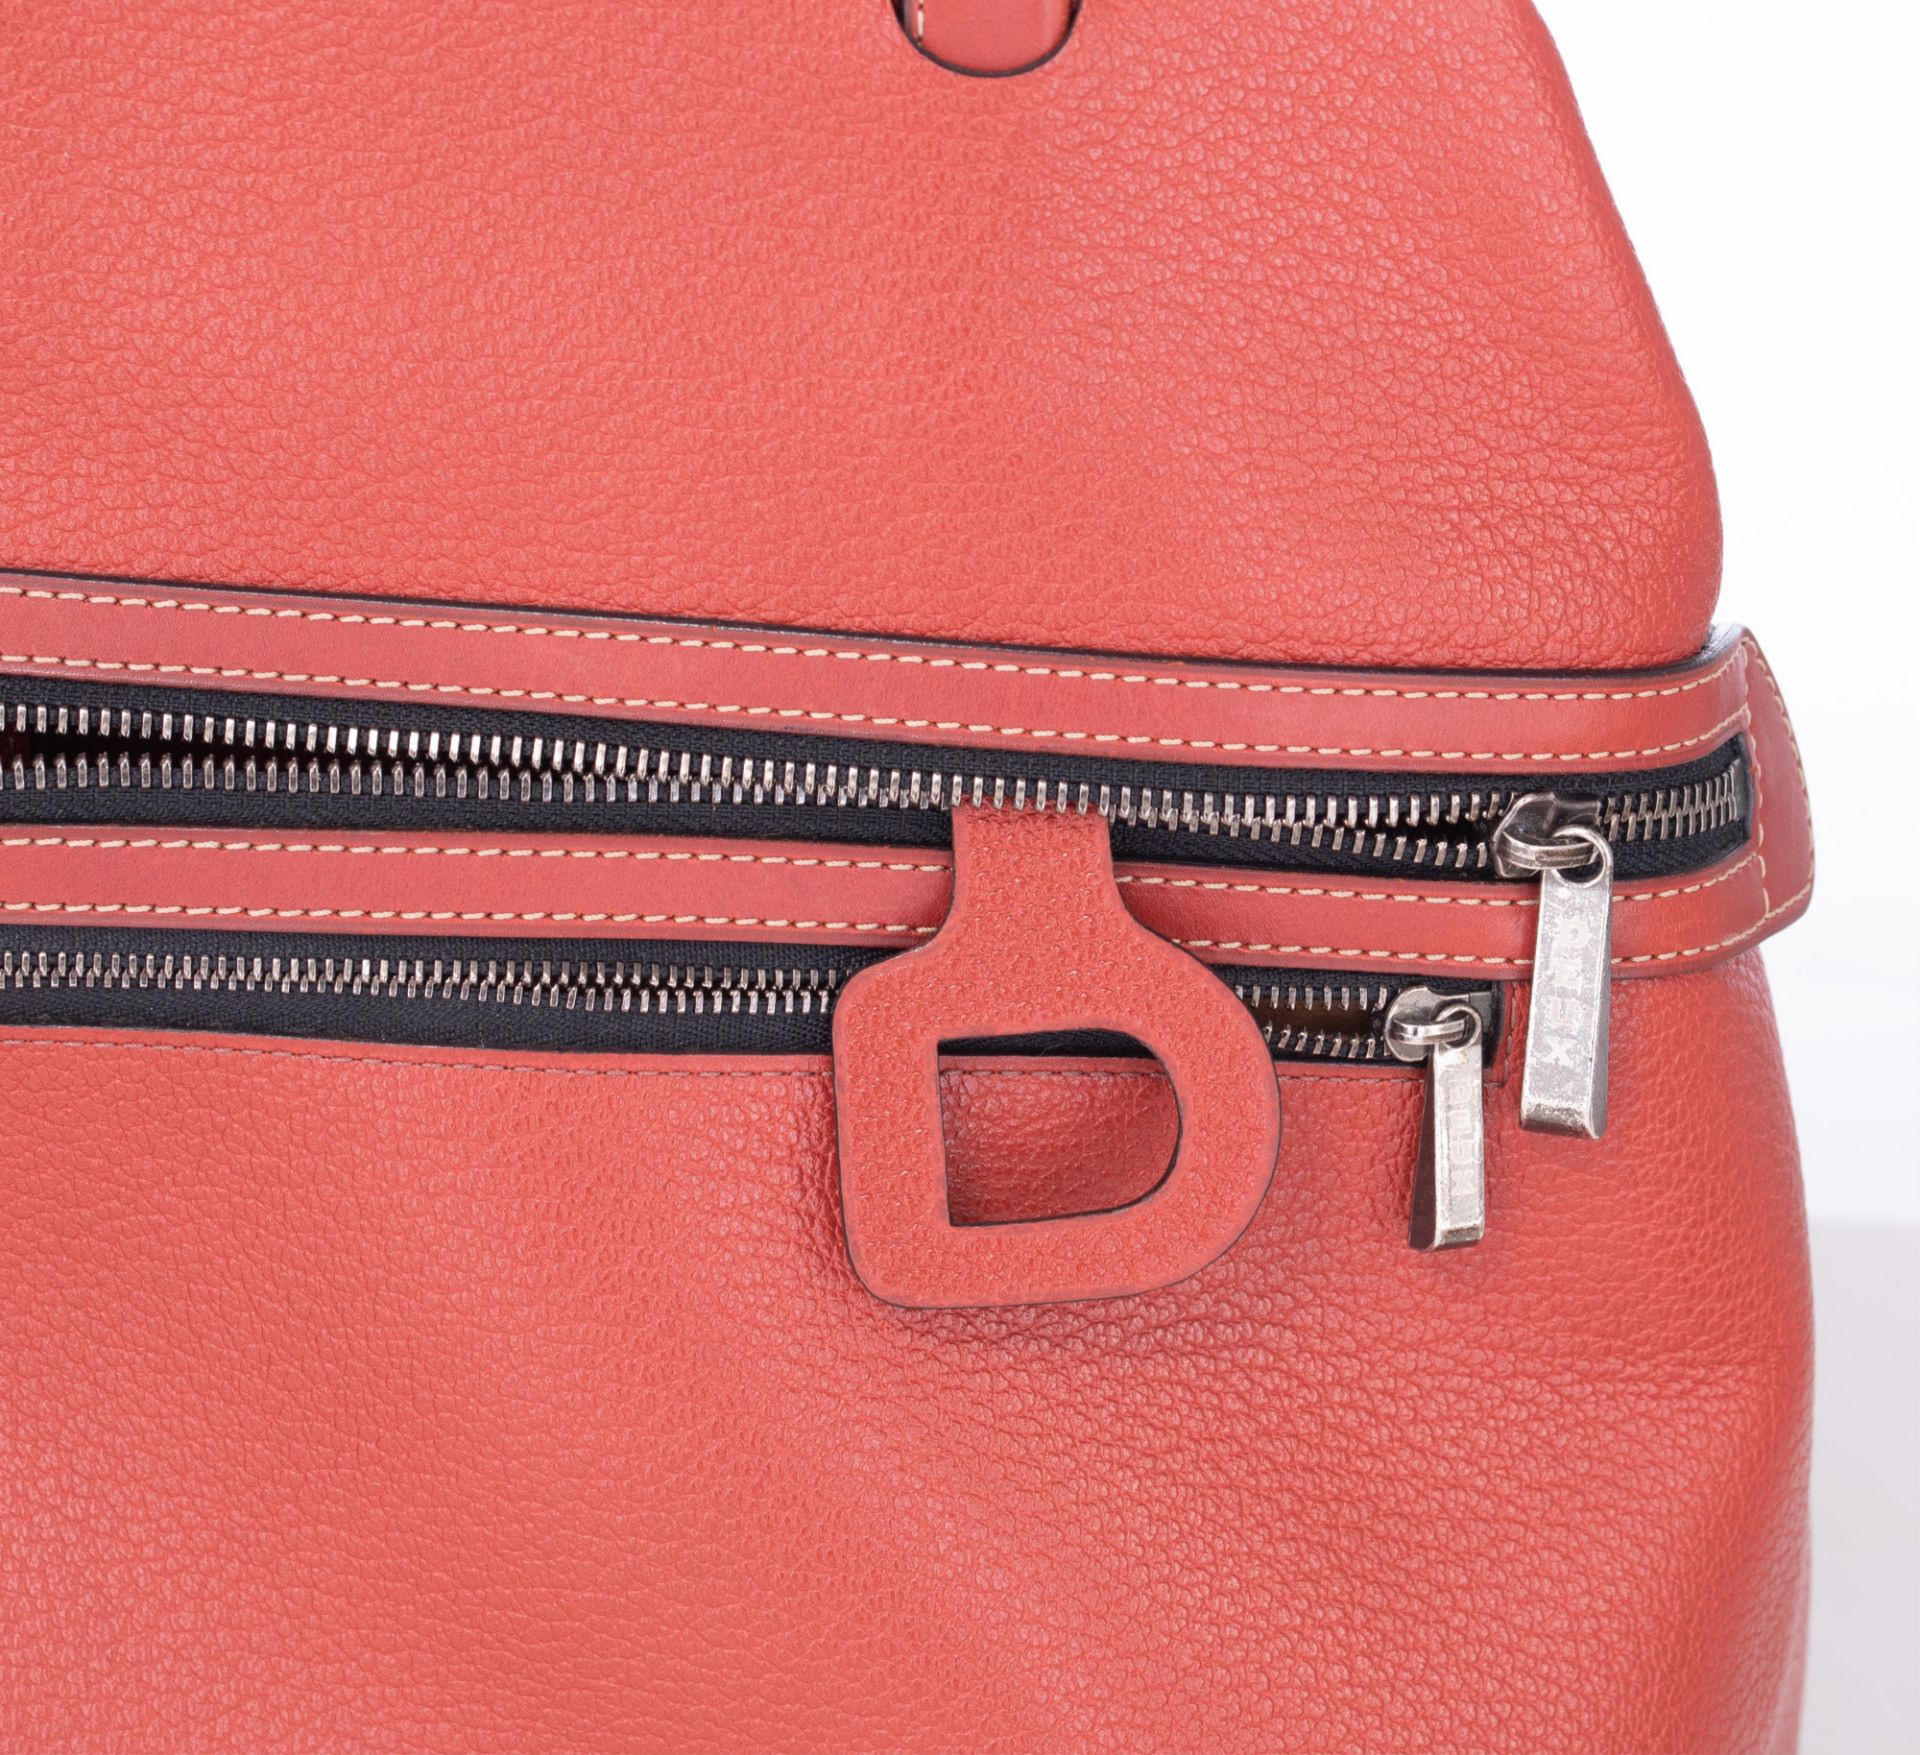 A red leather Deux de Delvaux handbag, H 29 - W 32 - D 15 cm - Bild 11 aus 12